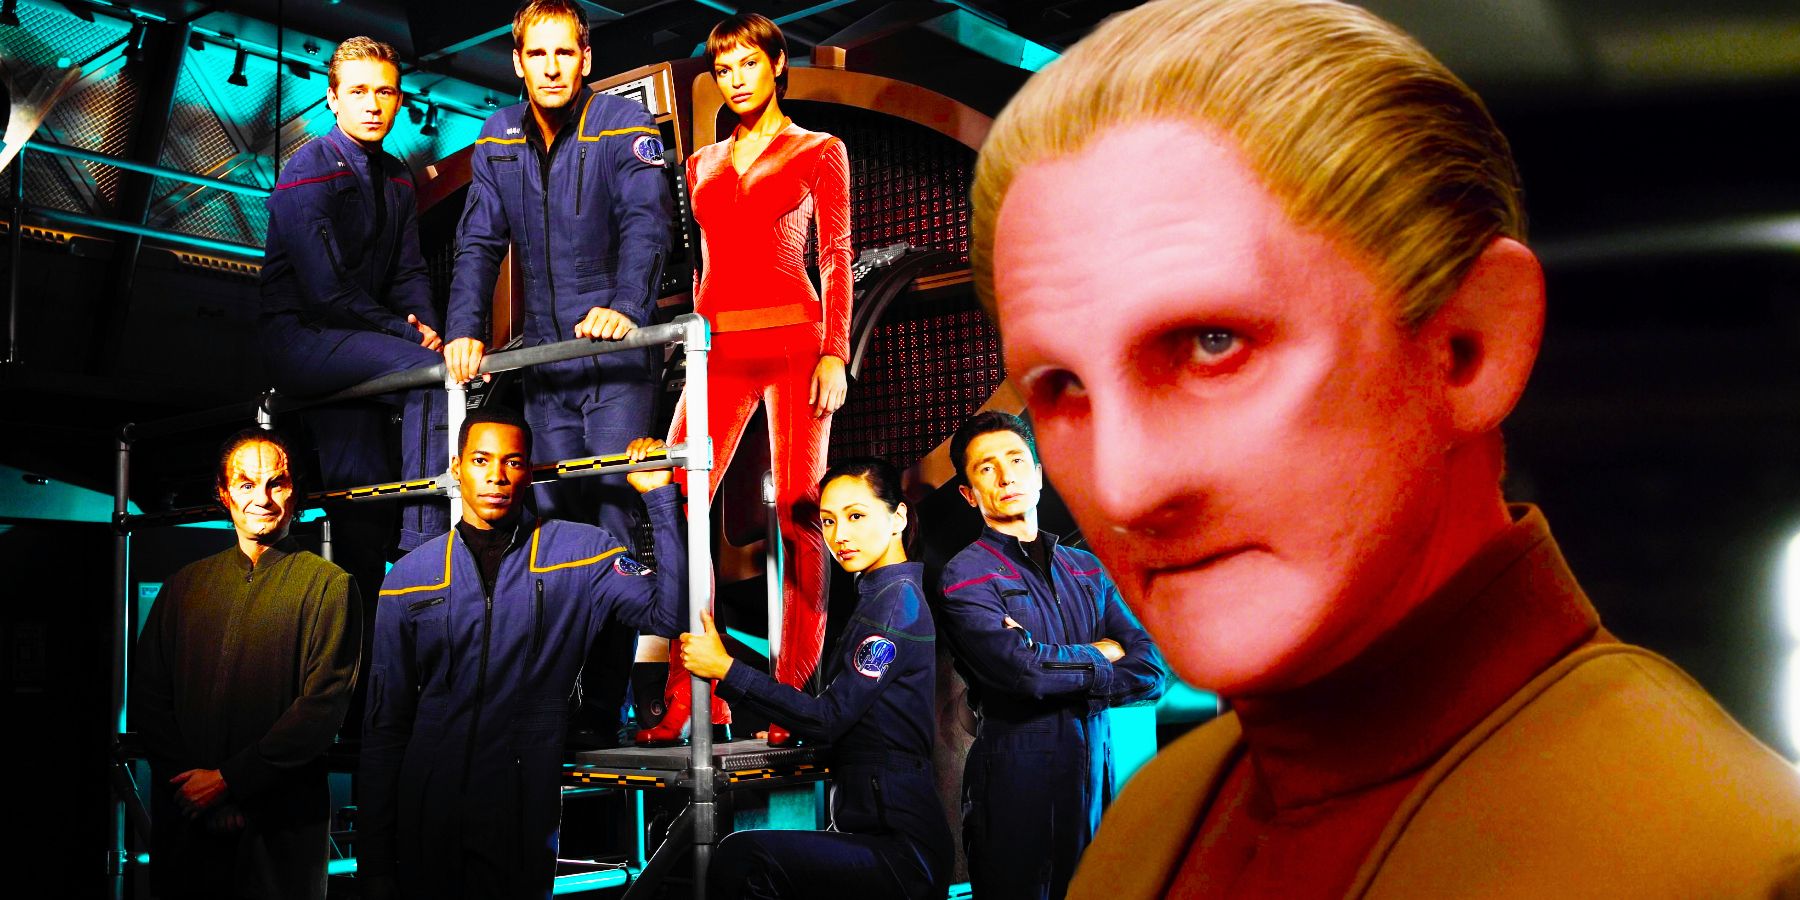 Rene Auberjonois as Odo in Star Trek: DS9 and the cast of Star Trek: Enterprise